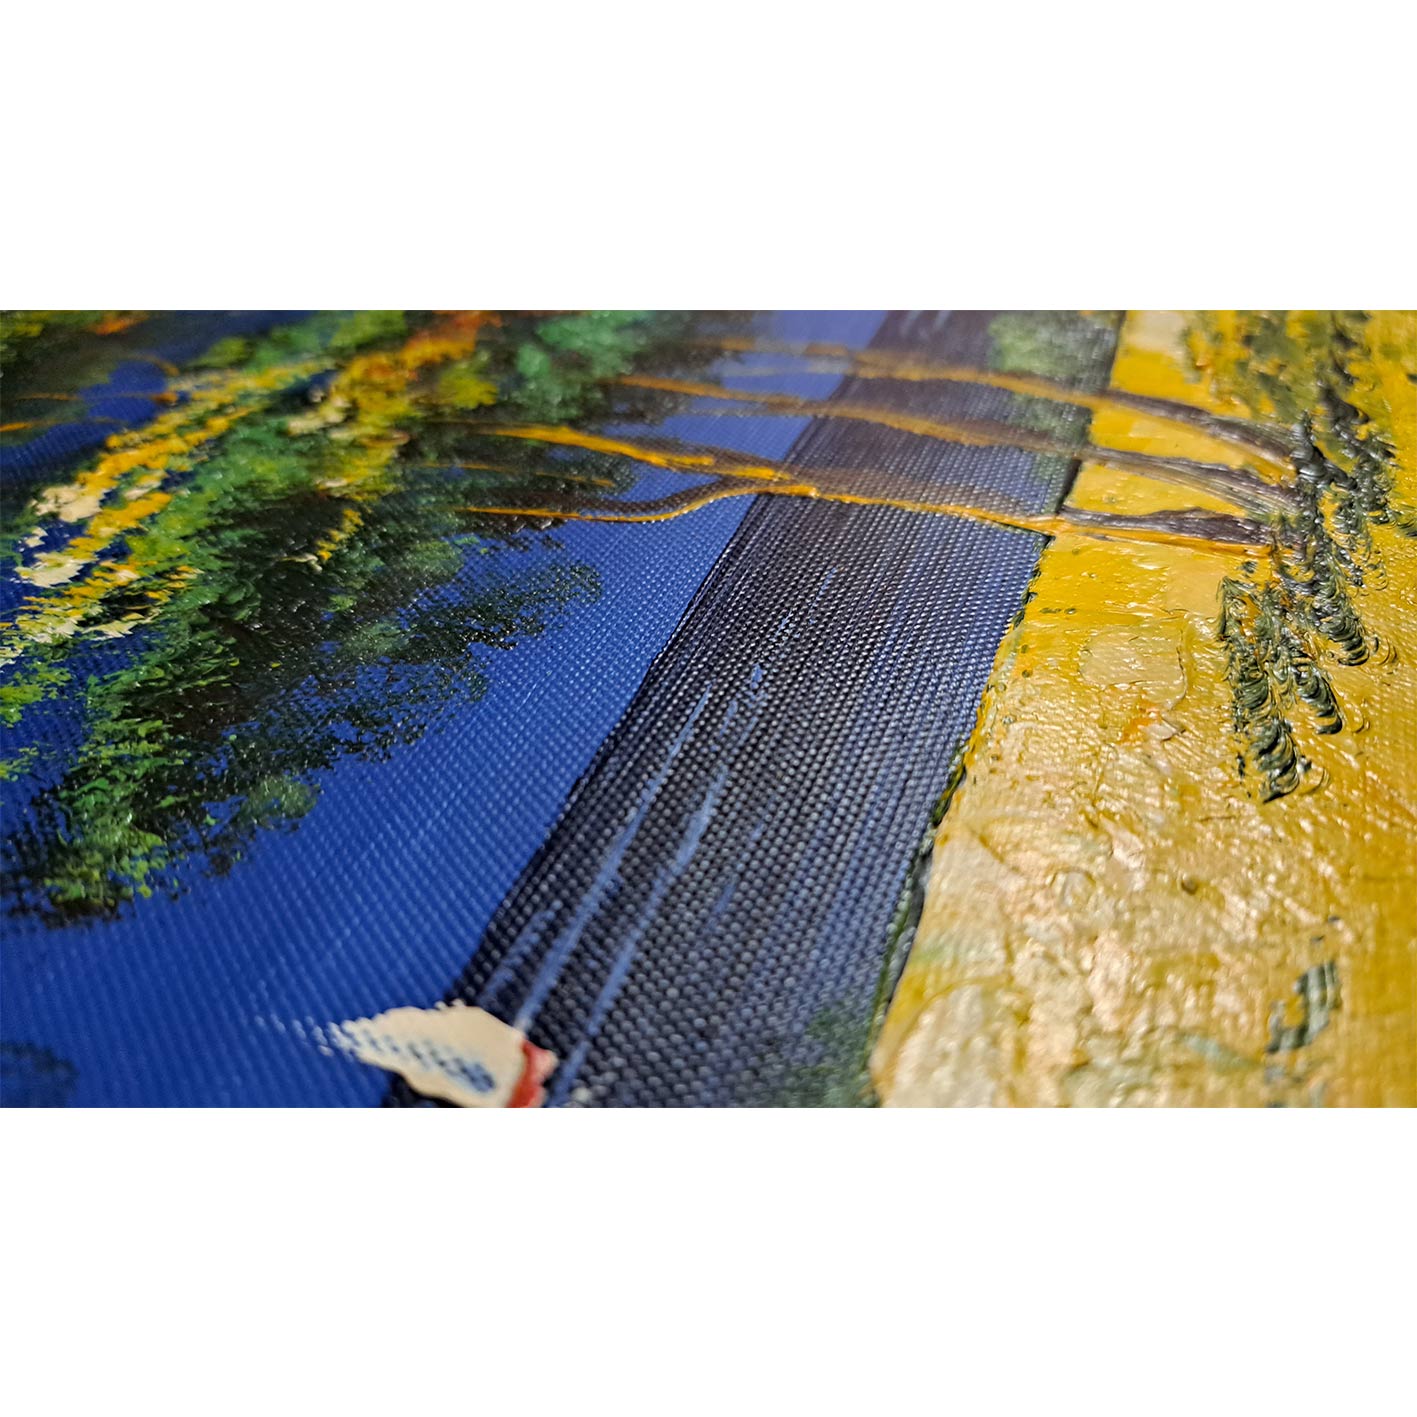 Landscape Diptych Painting 50X60 cm [2 pieces]